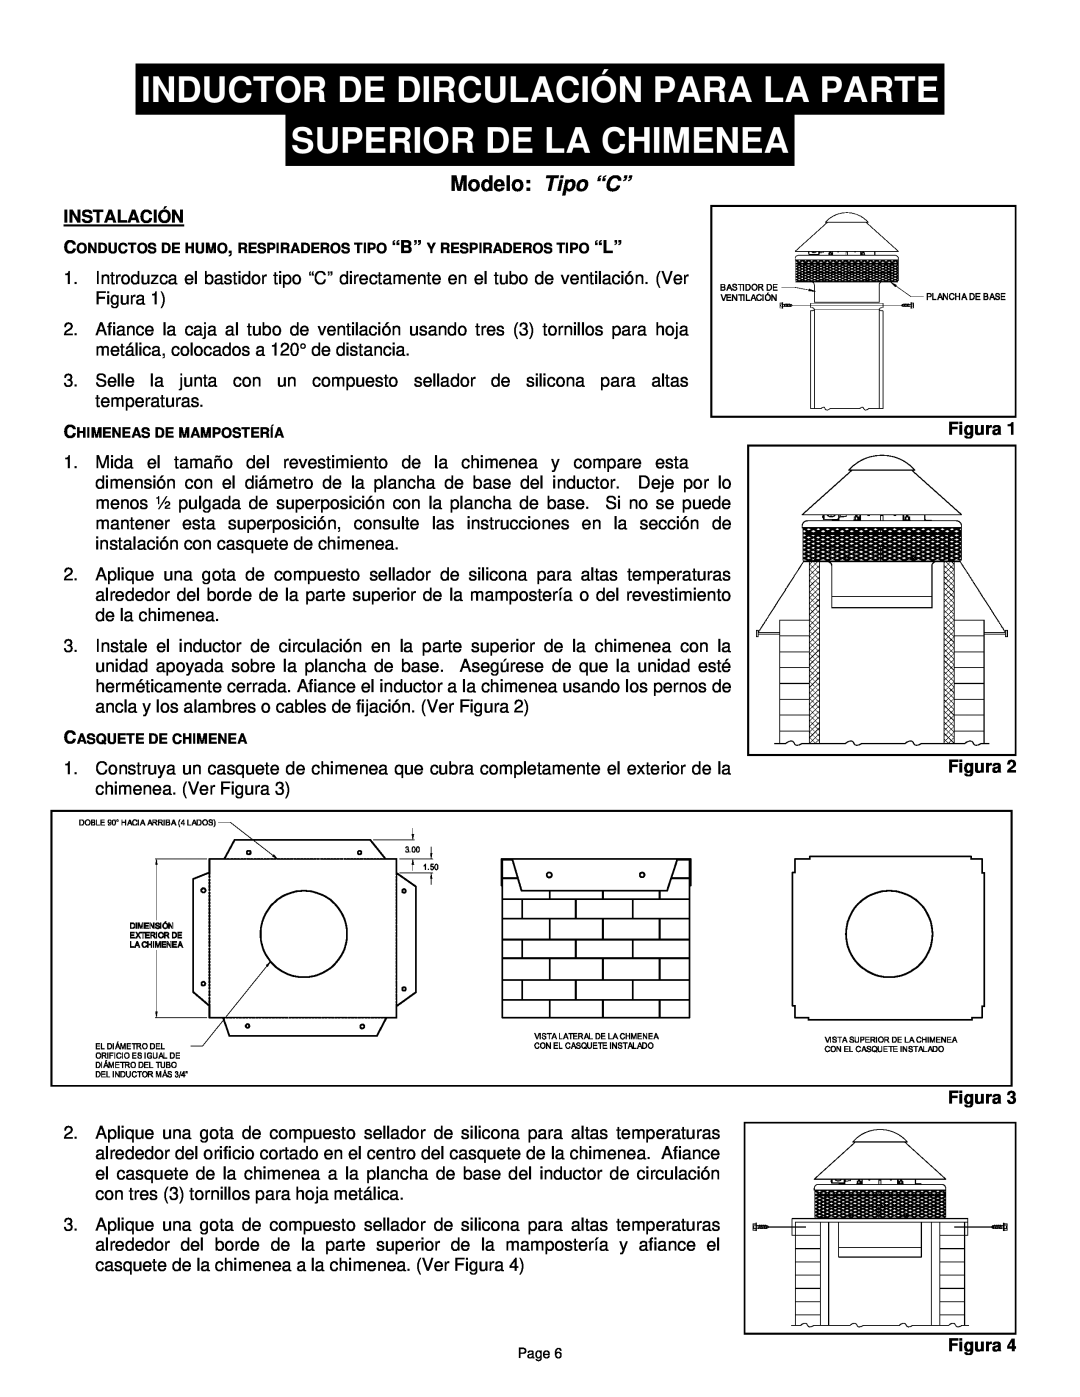 Field Controls TYPE "C manual Inductor De Dirculación Para La Parte, Superior De La Chimenea, Modelo Tipo “C”, Instalación 